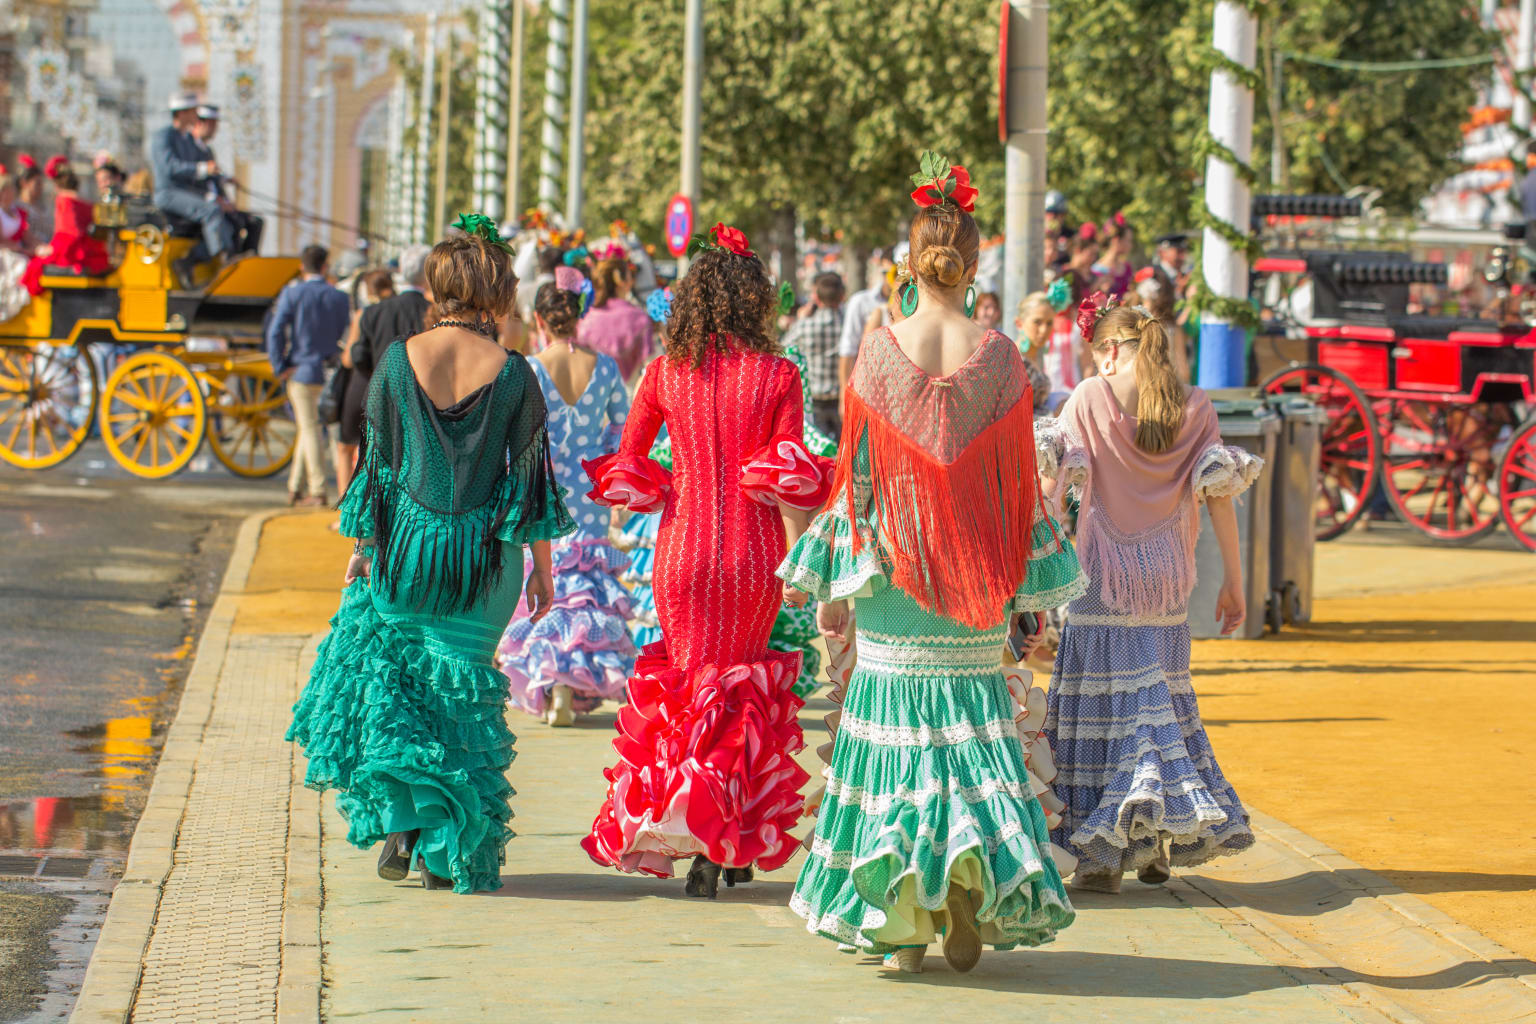 Women in traditional dress in Seville, Spain.